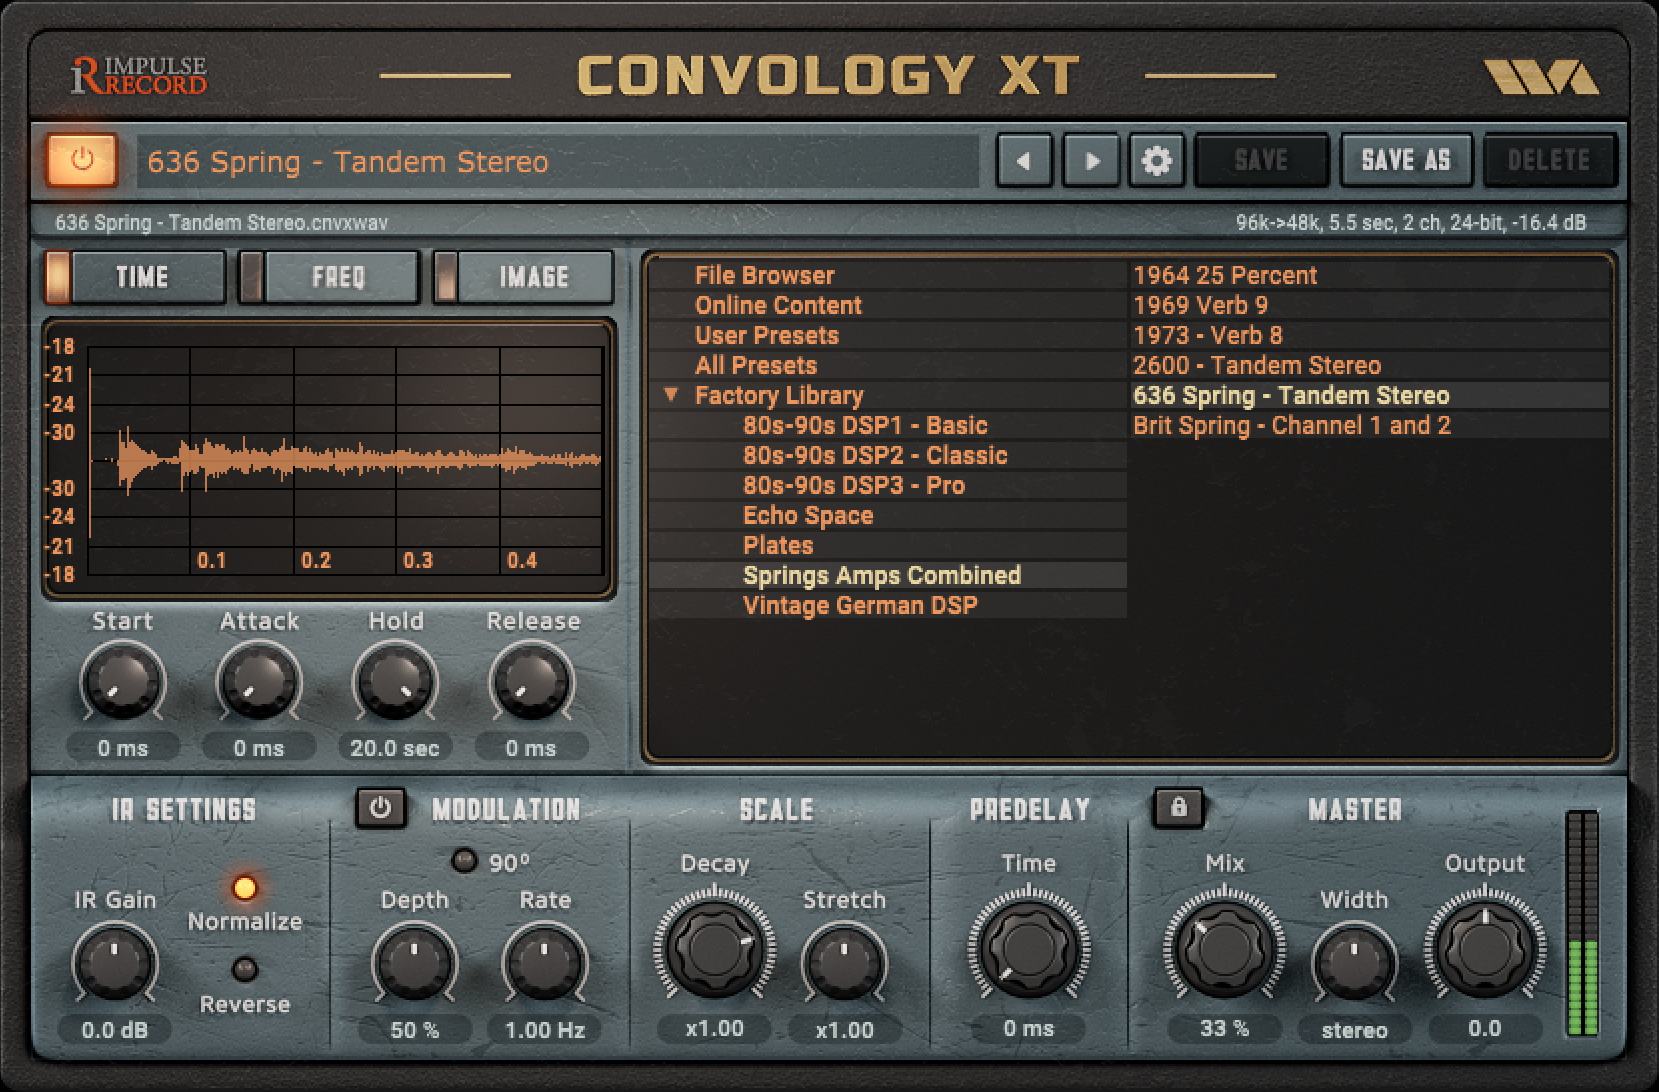 Convology XT by Impulse Record